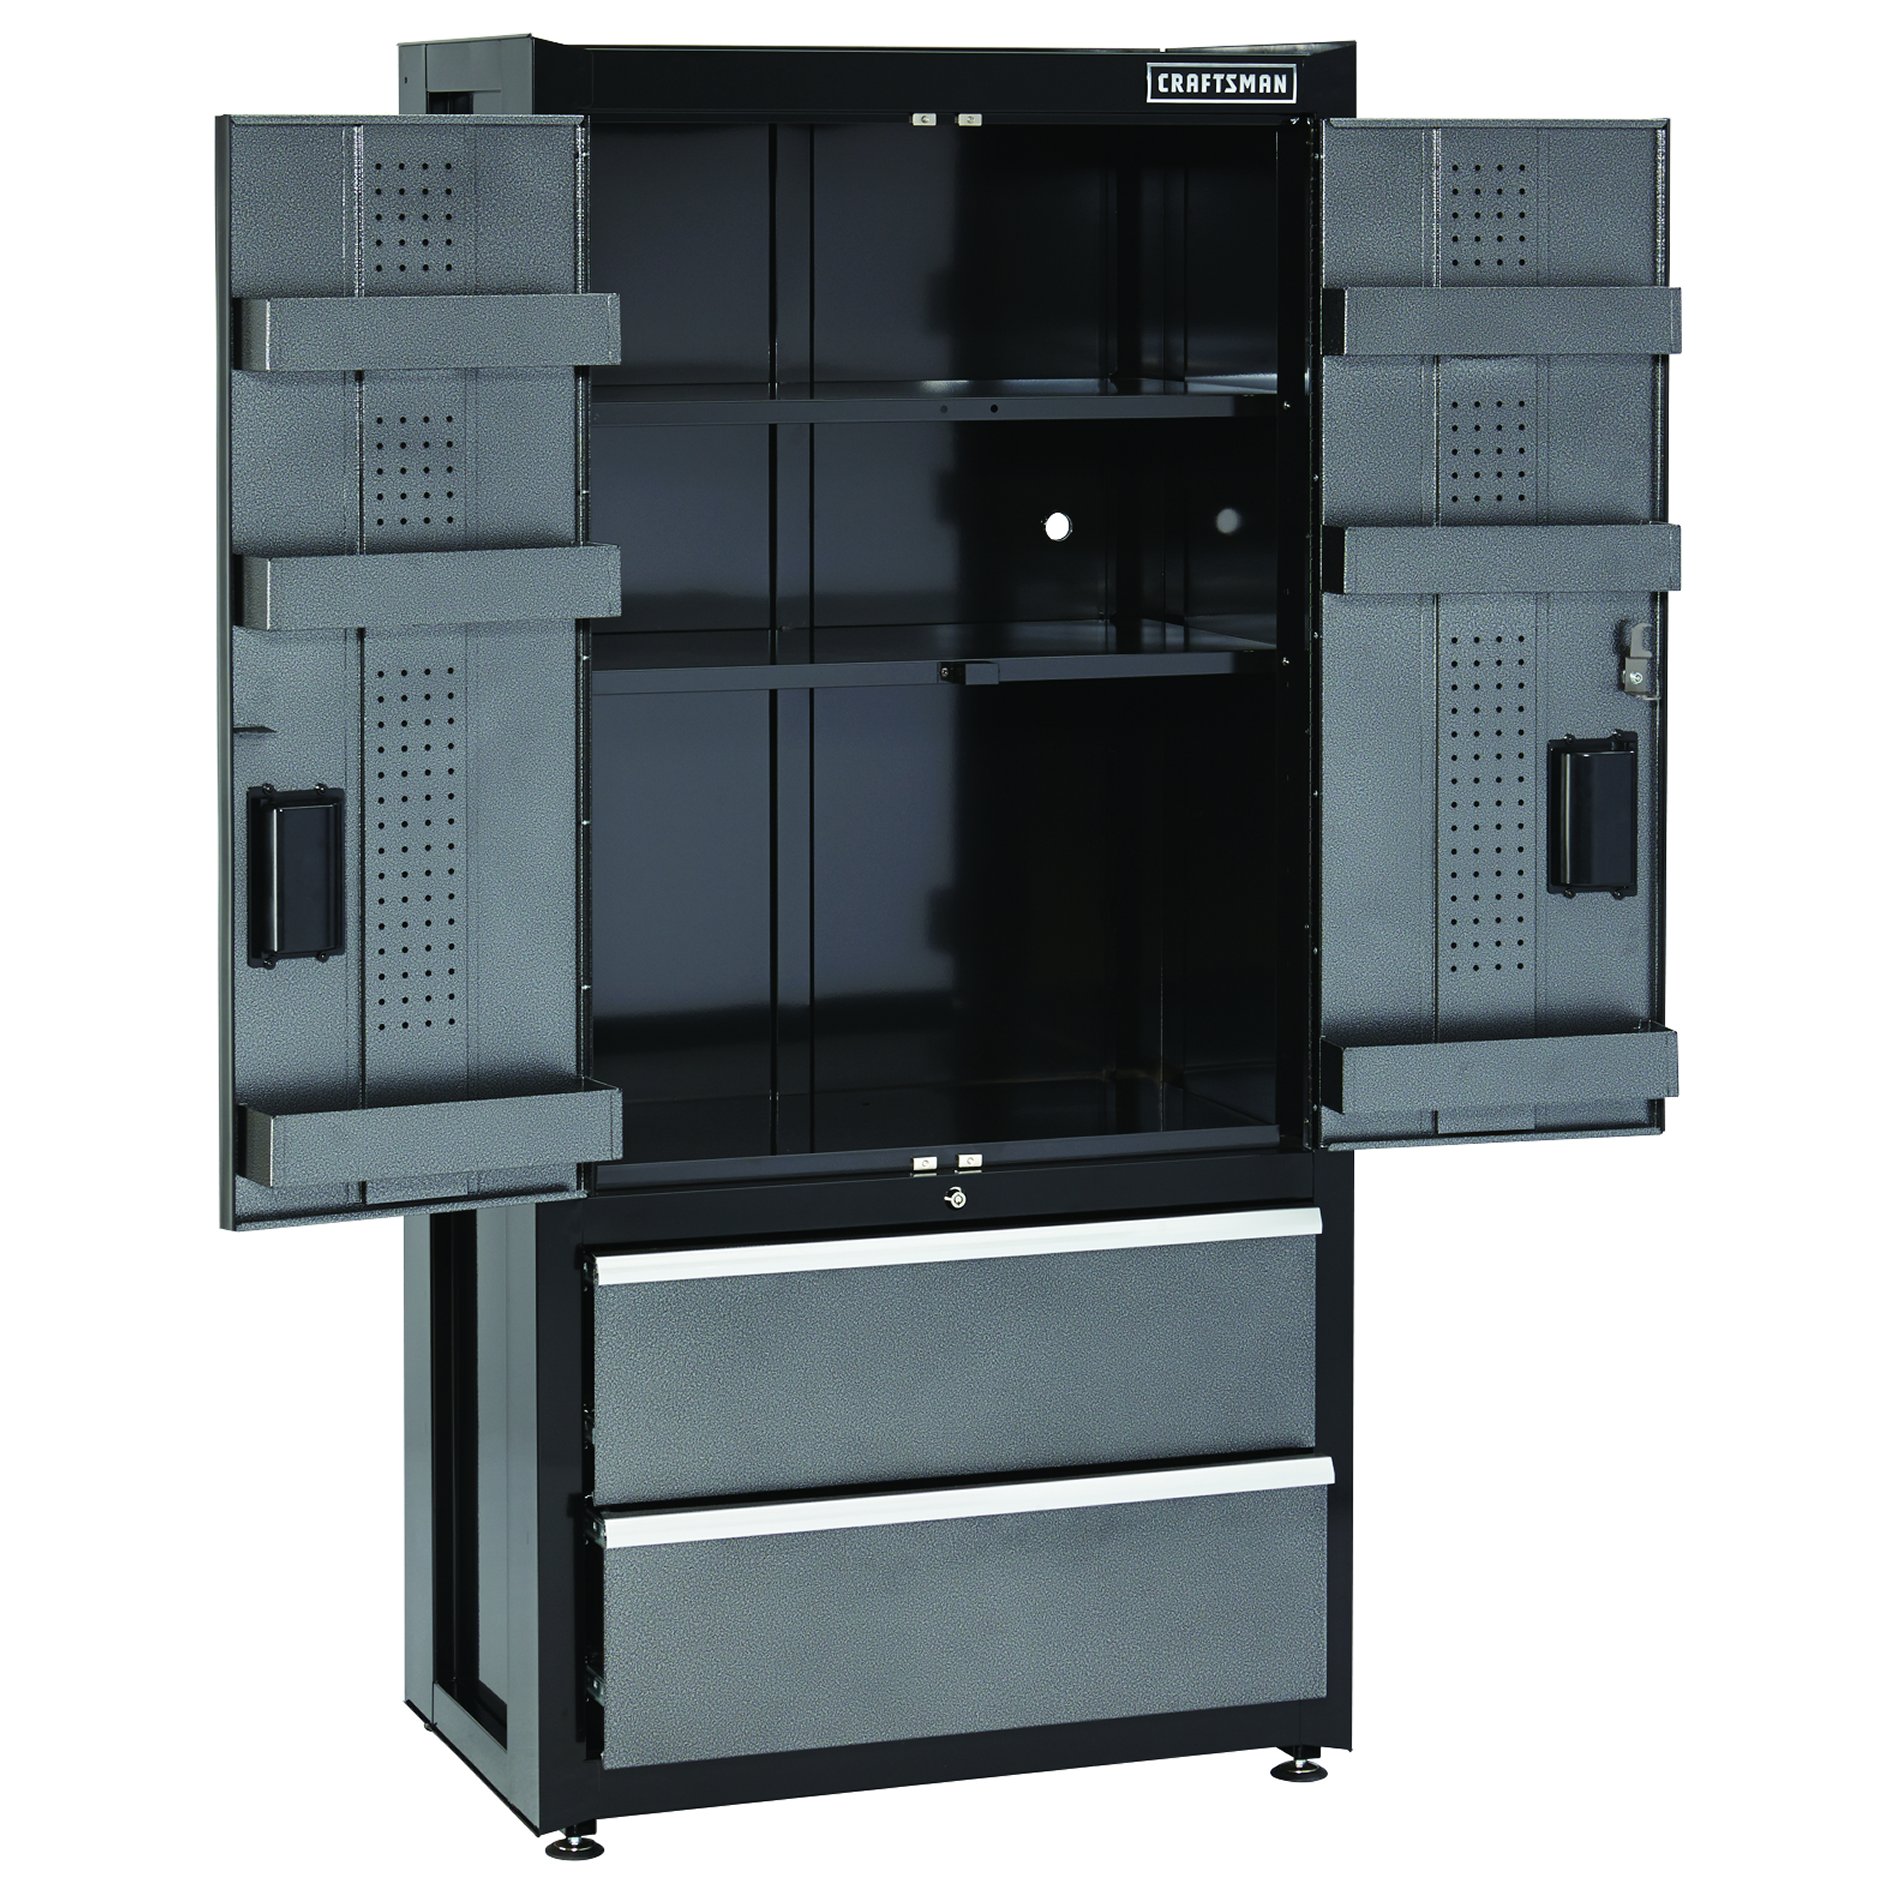 Craftsman Premium Heavy Duty Floor, Craftsman 6 Heavy Duty Floor Cabinet With 4 Shelves